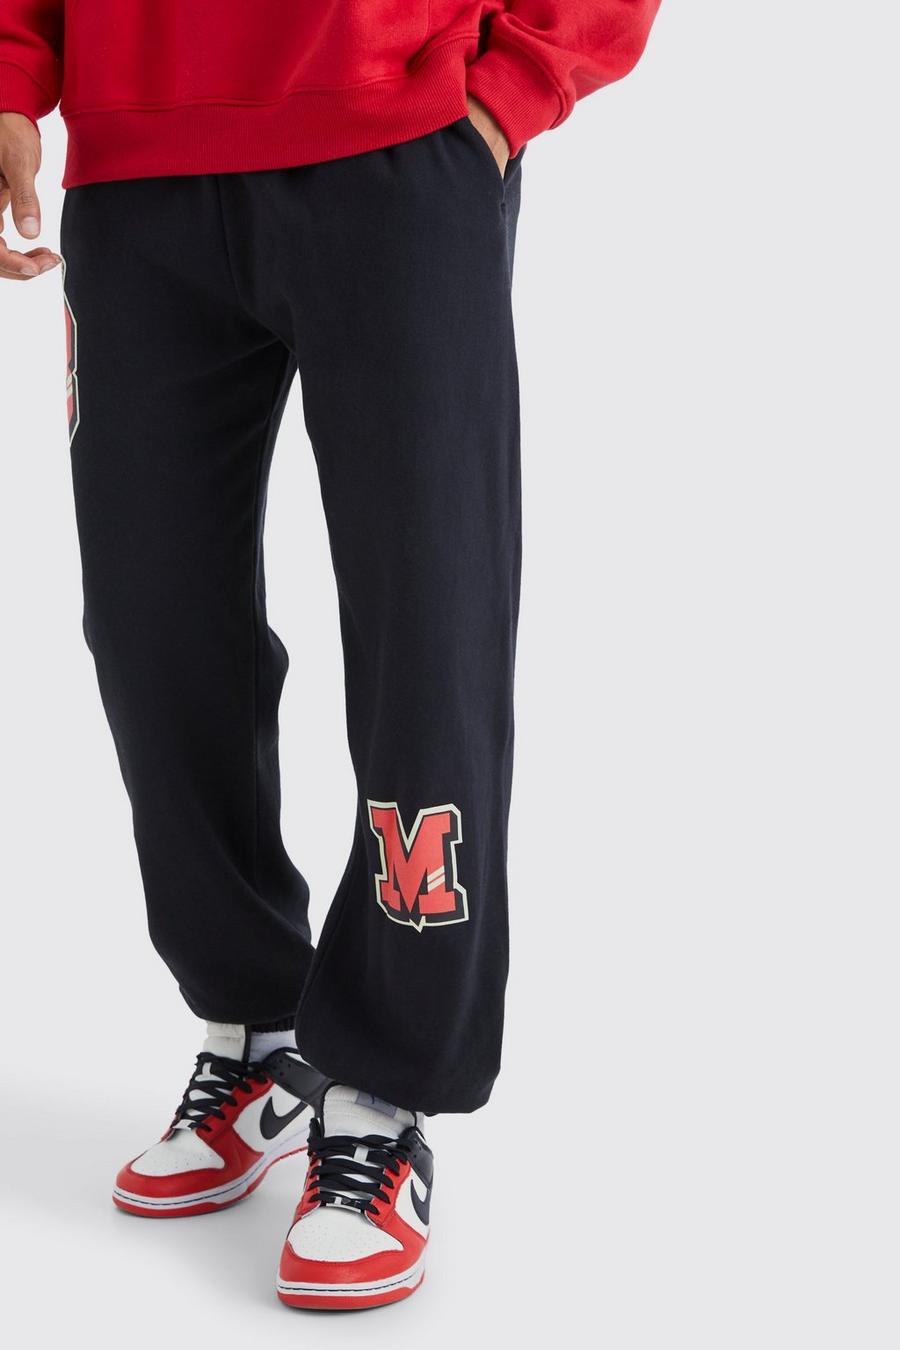 Pantalón deportivo oversize con estampado gráfico universitario BM, Black